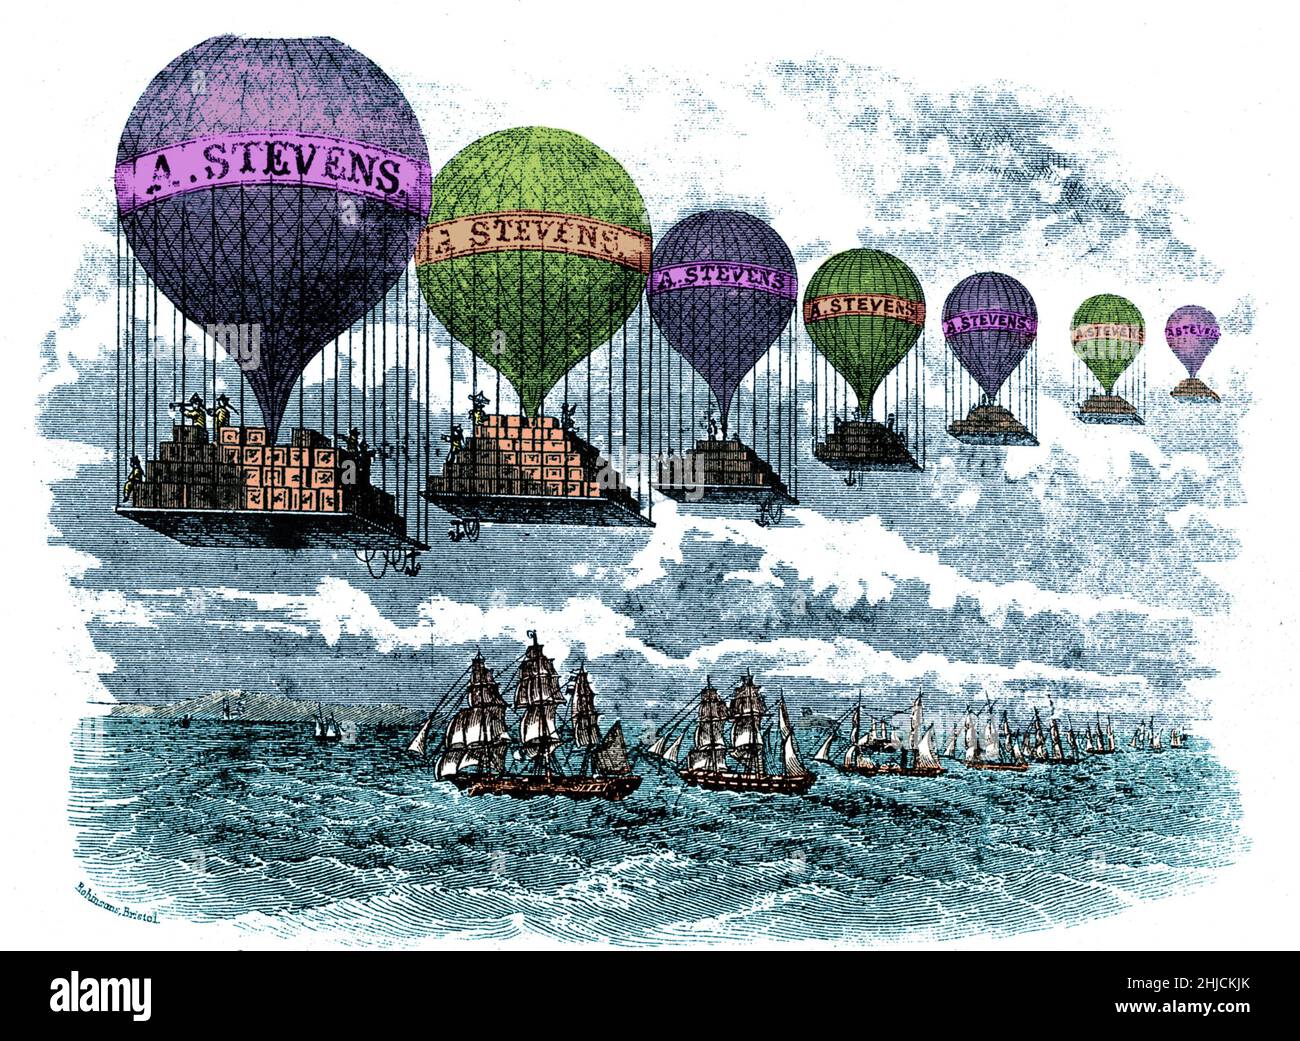 Un'incisione in legno del 19th-secolo di una linea di palloncini ad aria calda carica di scatole, pubblicità 'A. Stevens' e viaggiando su una linea di navi a vela. Colore ottimizzato. Foto Stock